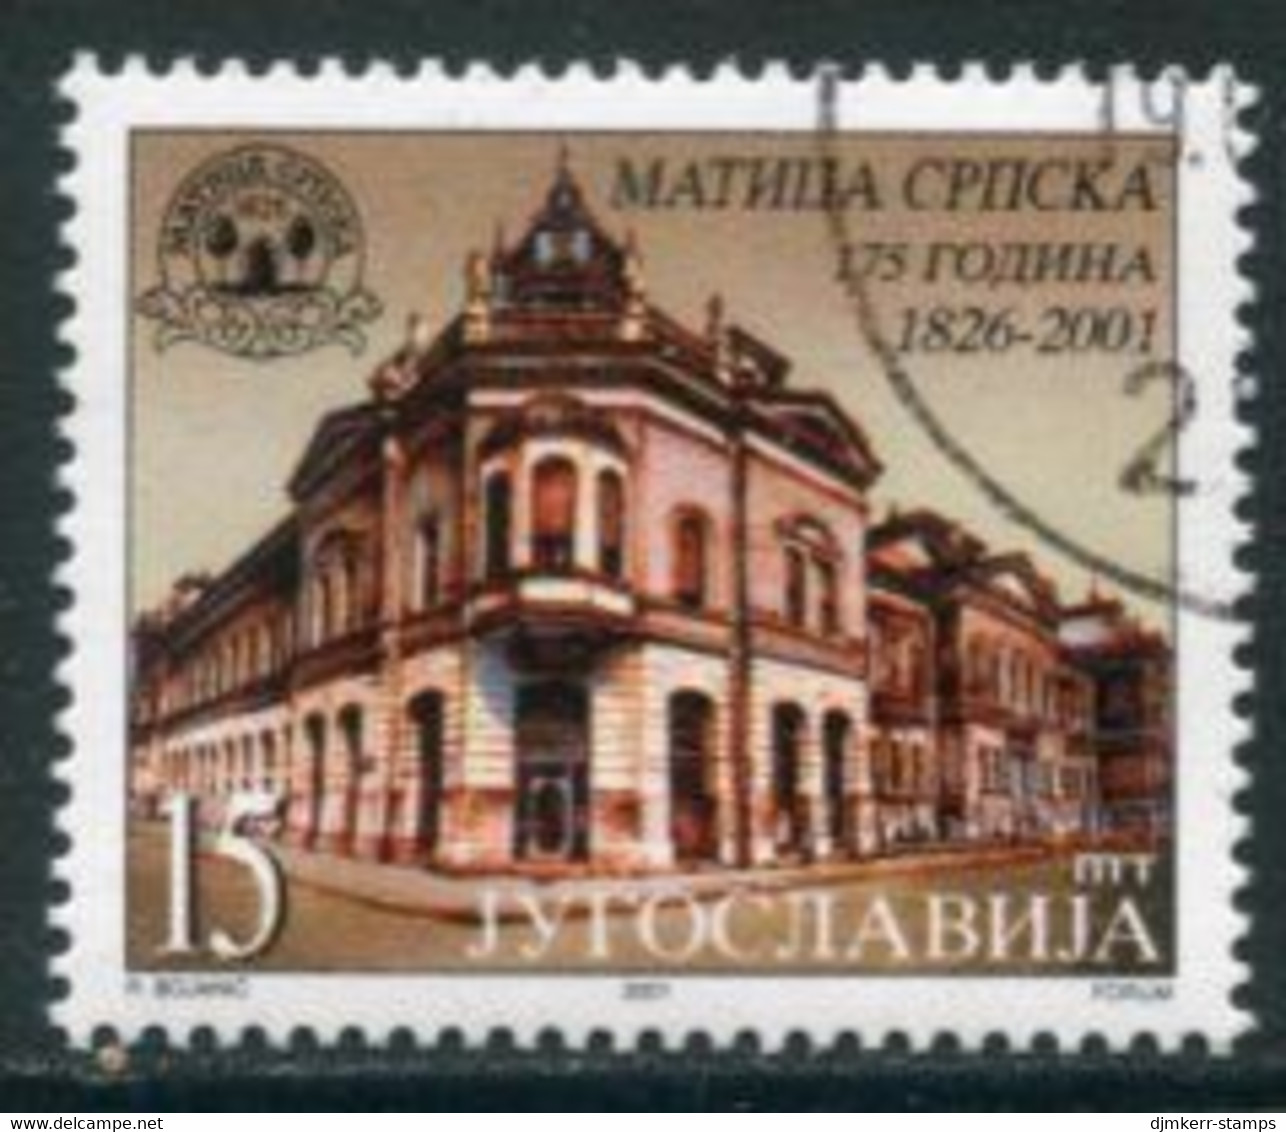 YUGOSLAVIA 2001 Matica Srpska Literary Association Used.  Michel 3012 - Gebruikt